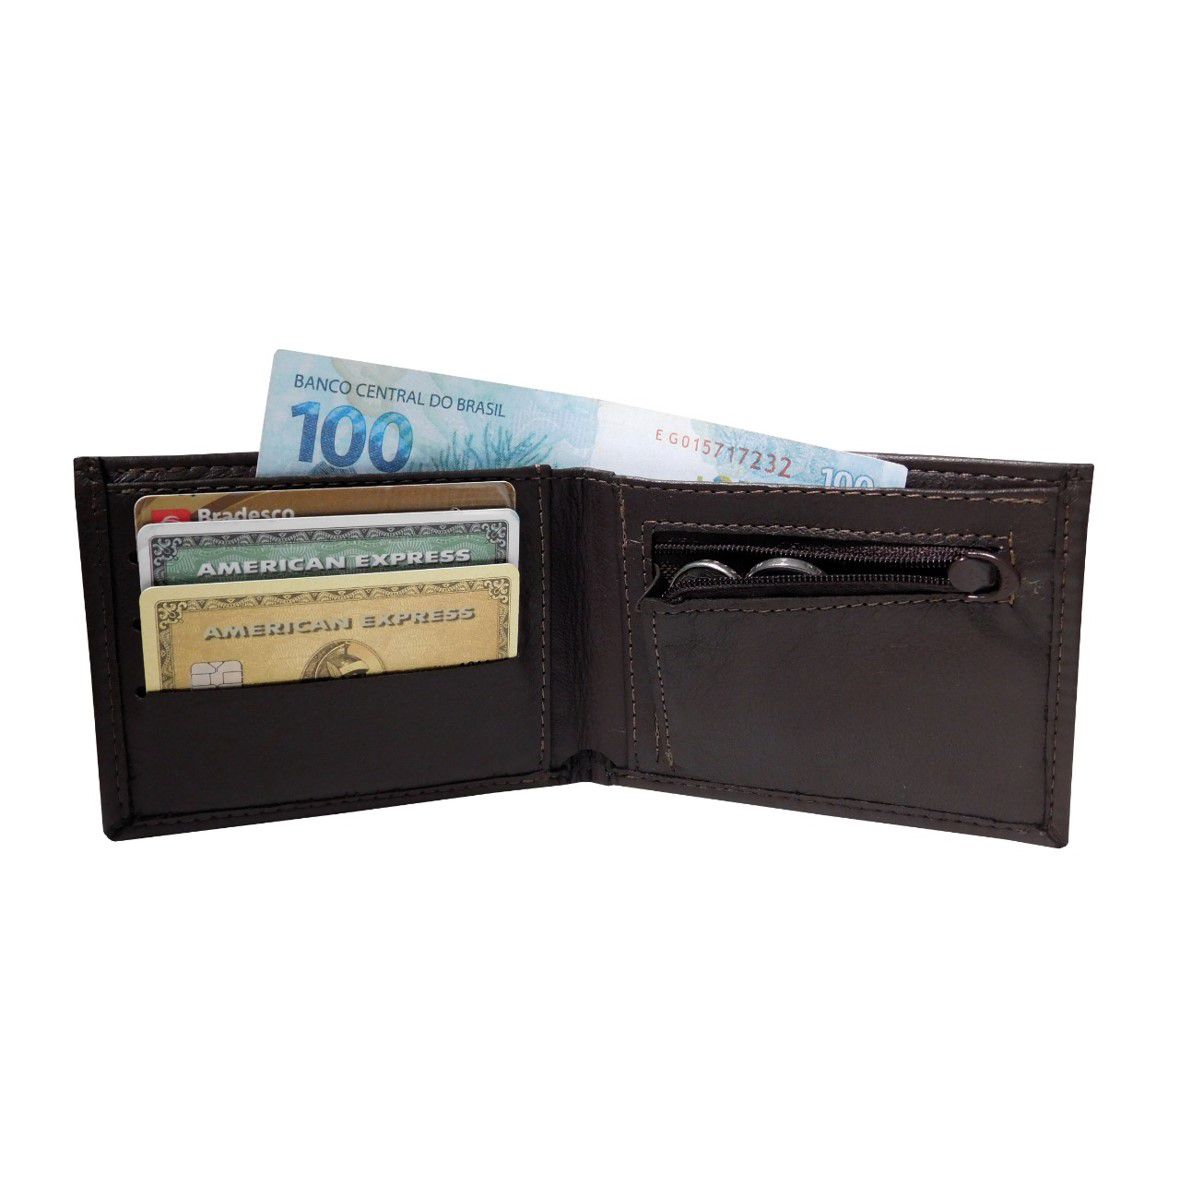 Carteira 45 - Masculina de Bolso em Couro (643TN45) Sem Plásticos - Porta Cartão, Moedas, Documento, RG, CNH, Dinheiro